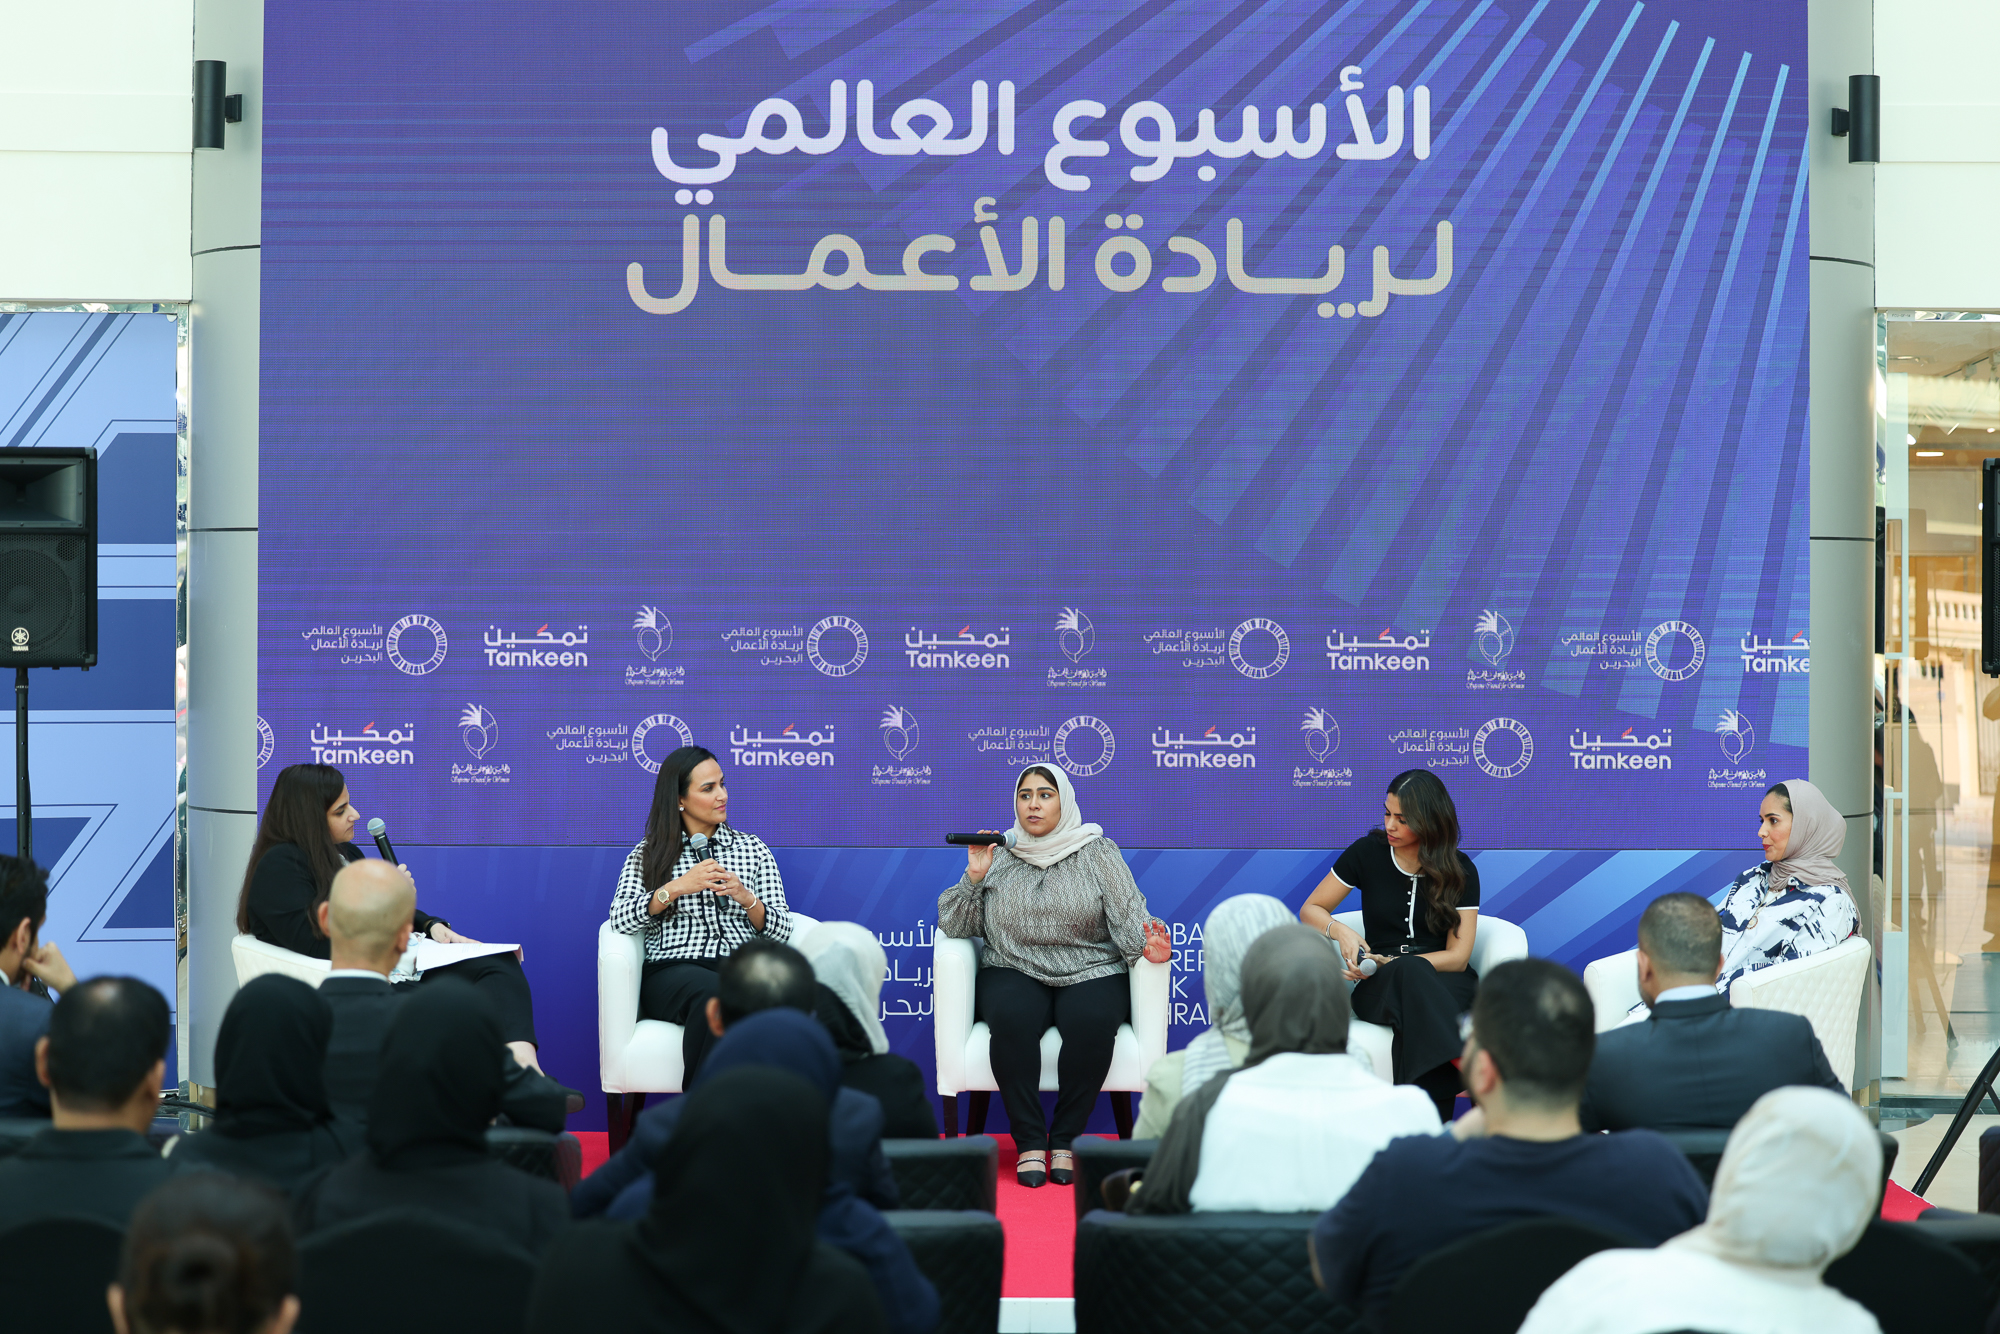 ضمن فعاليات الأسبوع العالمي لريادة الأعمال الموجهة للمرأة البحرينية “المجلس الأعلى للمرأة” و”تمكين” يستضيفان حوارًا مفتوحًا بين رائدات الأعمال لمناقشة الفرص والتحديات في القطاعات المختلفة